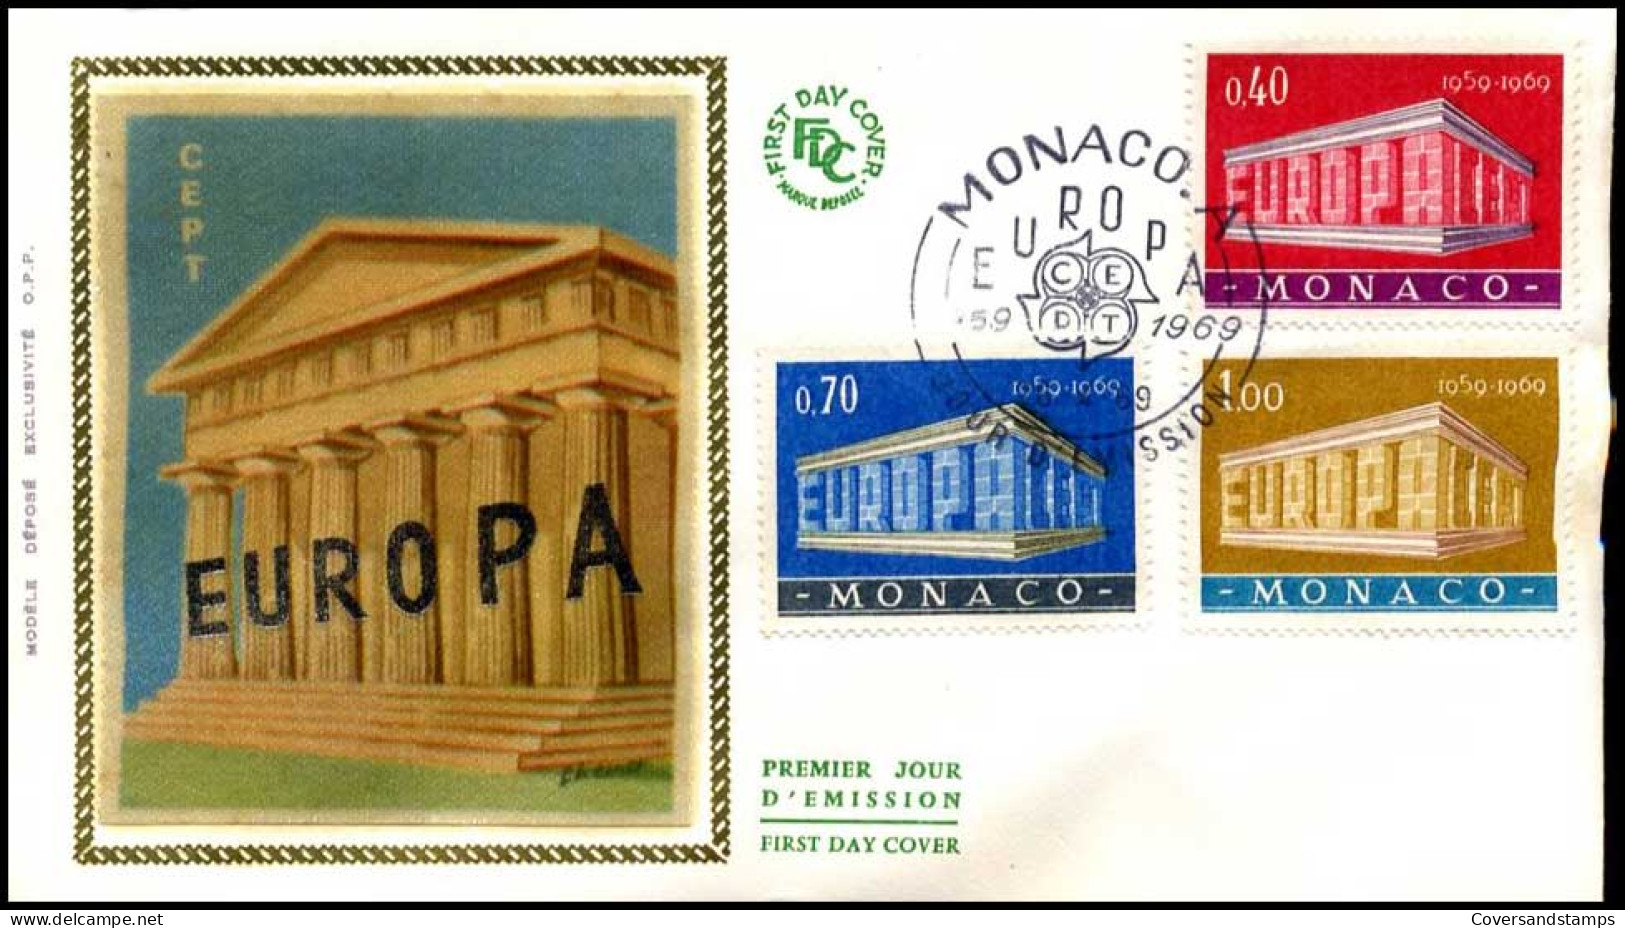  Monaco - FDC - Europa CEPT 1969 - 1969